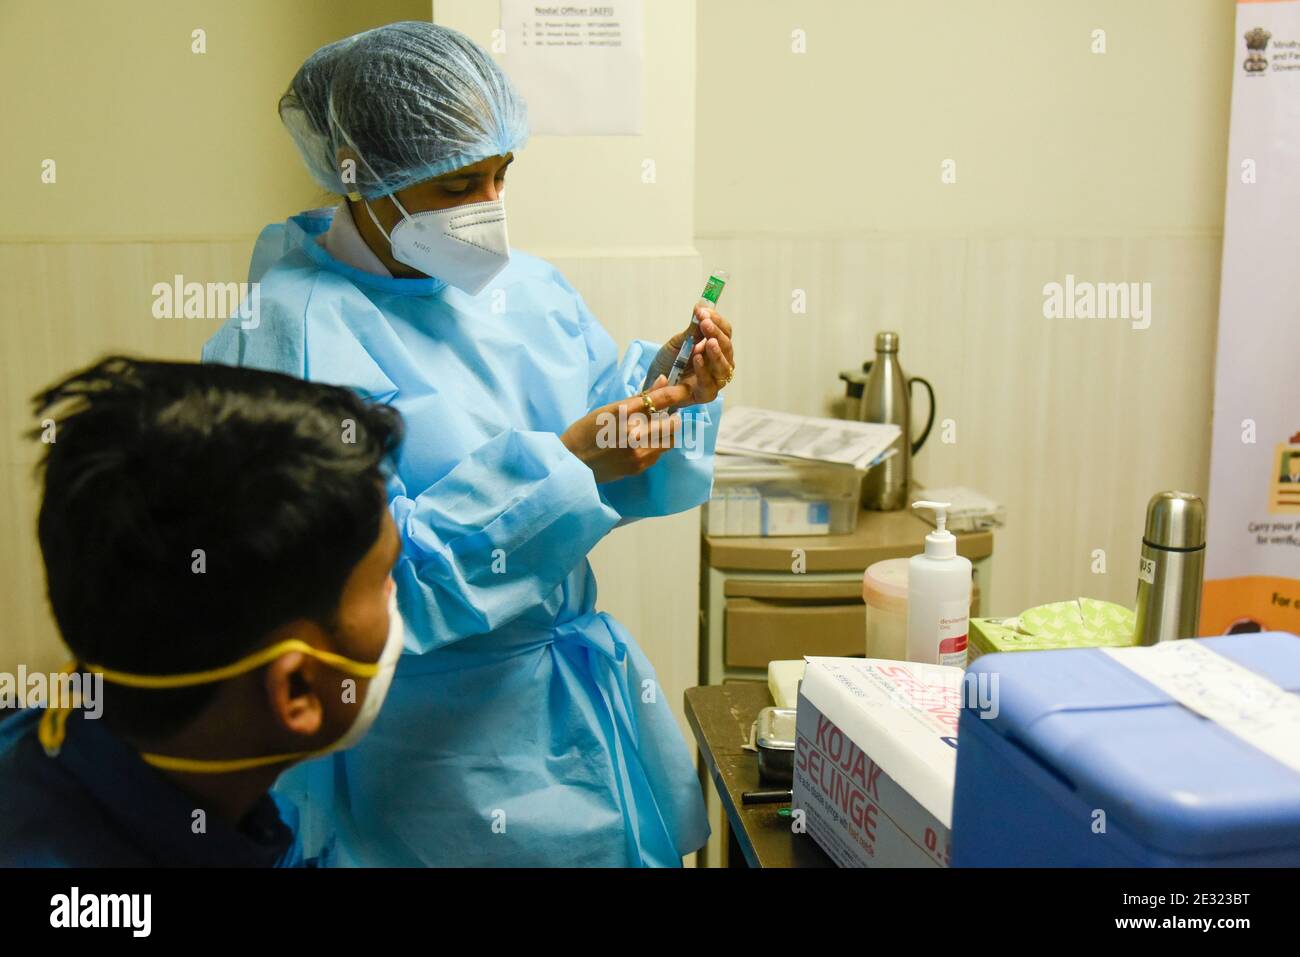 Nuova Delhi, India. 16 gennaio 2021. Un operatore sanitario riempie una siringa con una dose di un vaccino COVID-19 di Oxford-AstraZeneca, chiamato COVISHIELD, durante la campagna di vaccinazione contro la malattia di coronavirus (COVID-19) presso l'ospedale Primus Super Specialty Hospital di New Delhi, India, 16 gennaio 2021. Il primo ministro Narendra modi Sabato ha lanciato l'India Covid-19 vaccinazione drive, il più grande esercizio di inoculazione del mondo contro il nuovo coronavirus. In un discorso virtuale, PM modi ha reso omaggio a scienziati e operatori sanitari, che sono stati in prima linea della pandemia. Credito: David Talukdar/A. Foto Stock